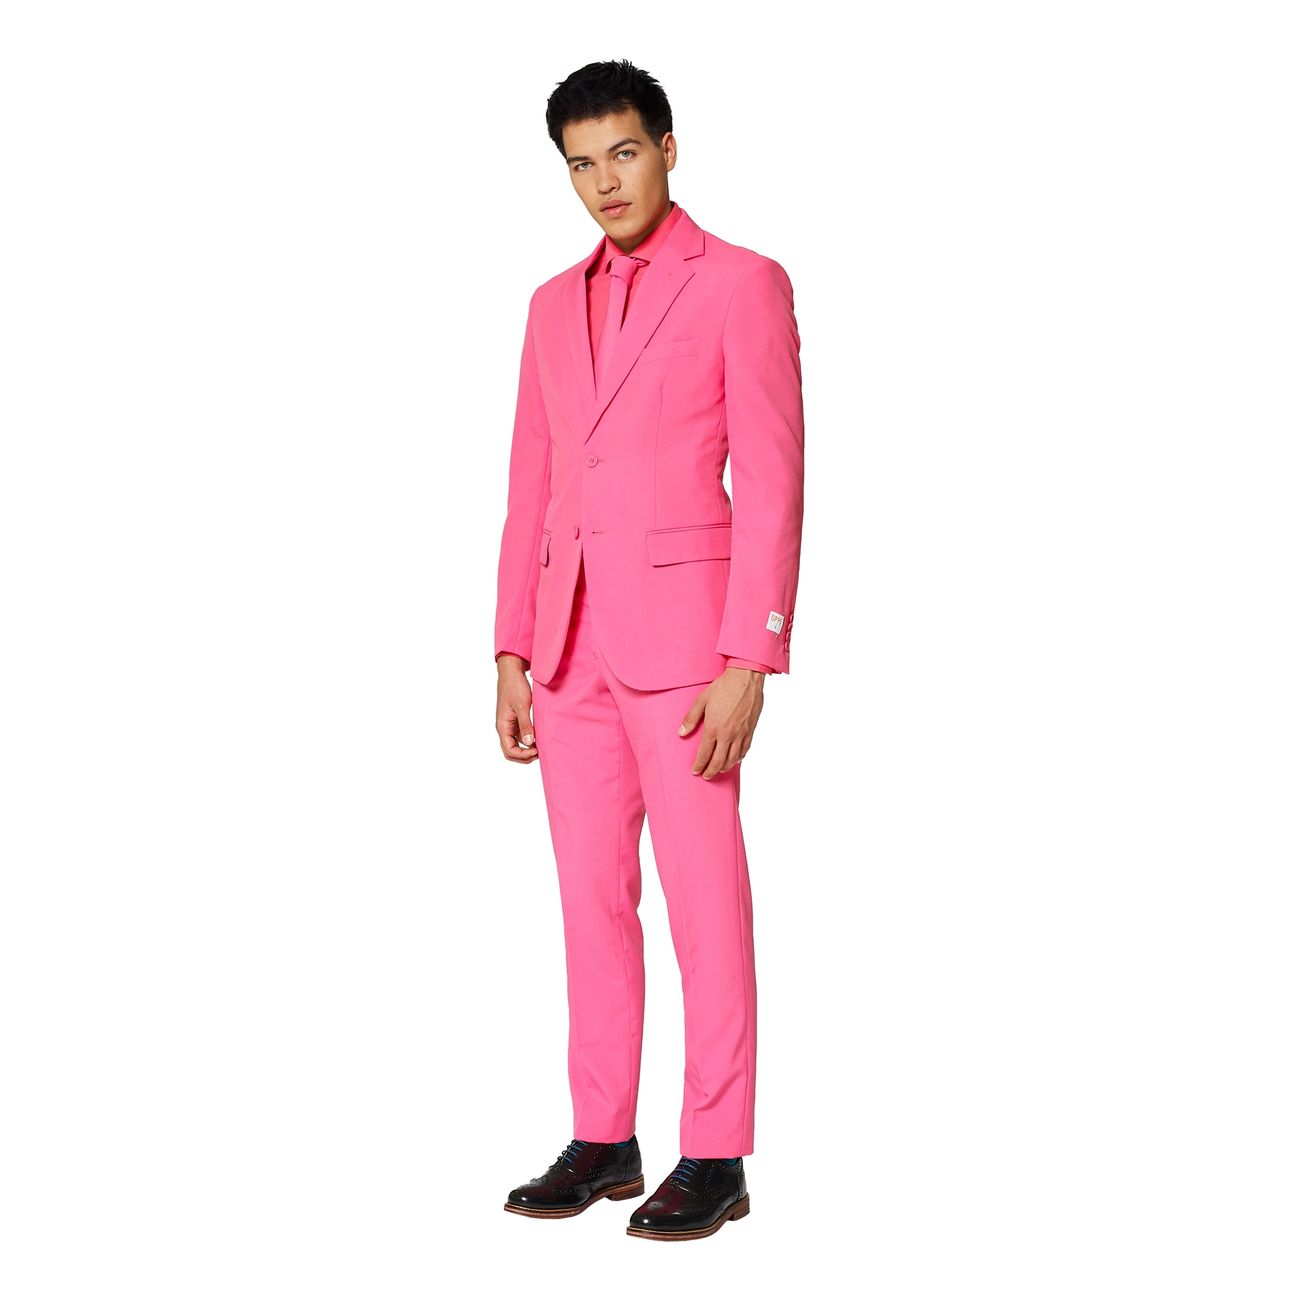 opposuits-mr-pink-kostym-16981-9